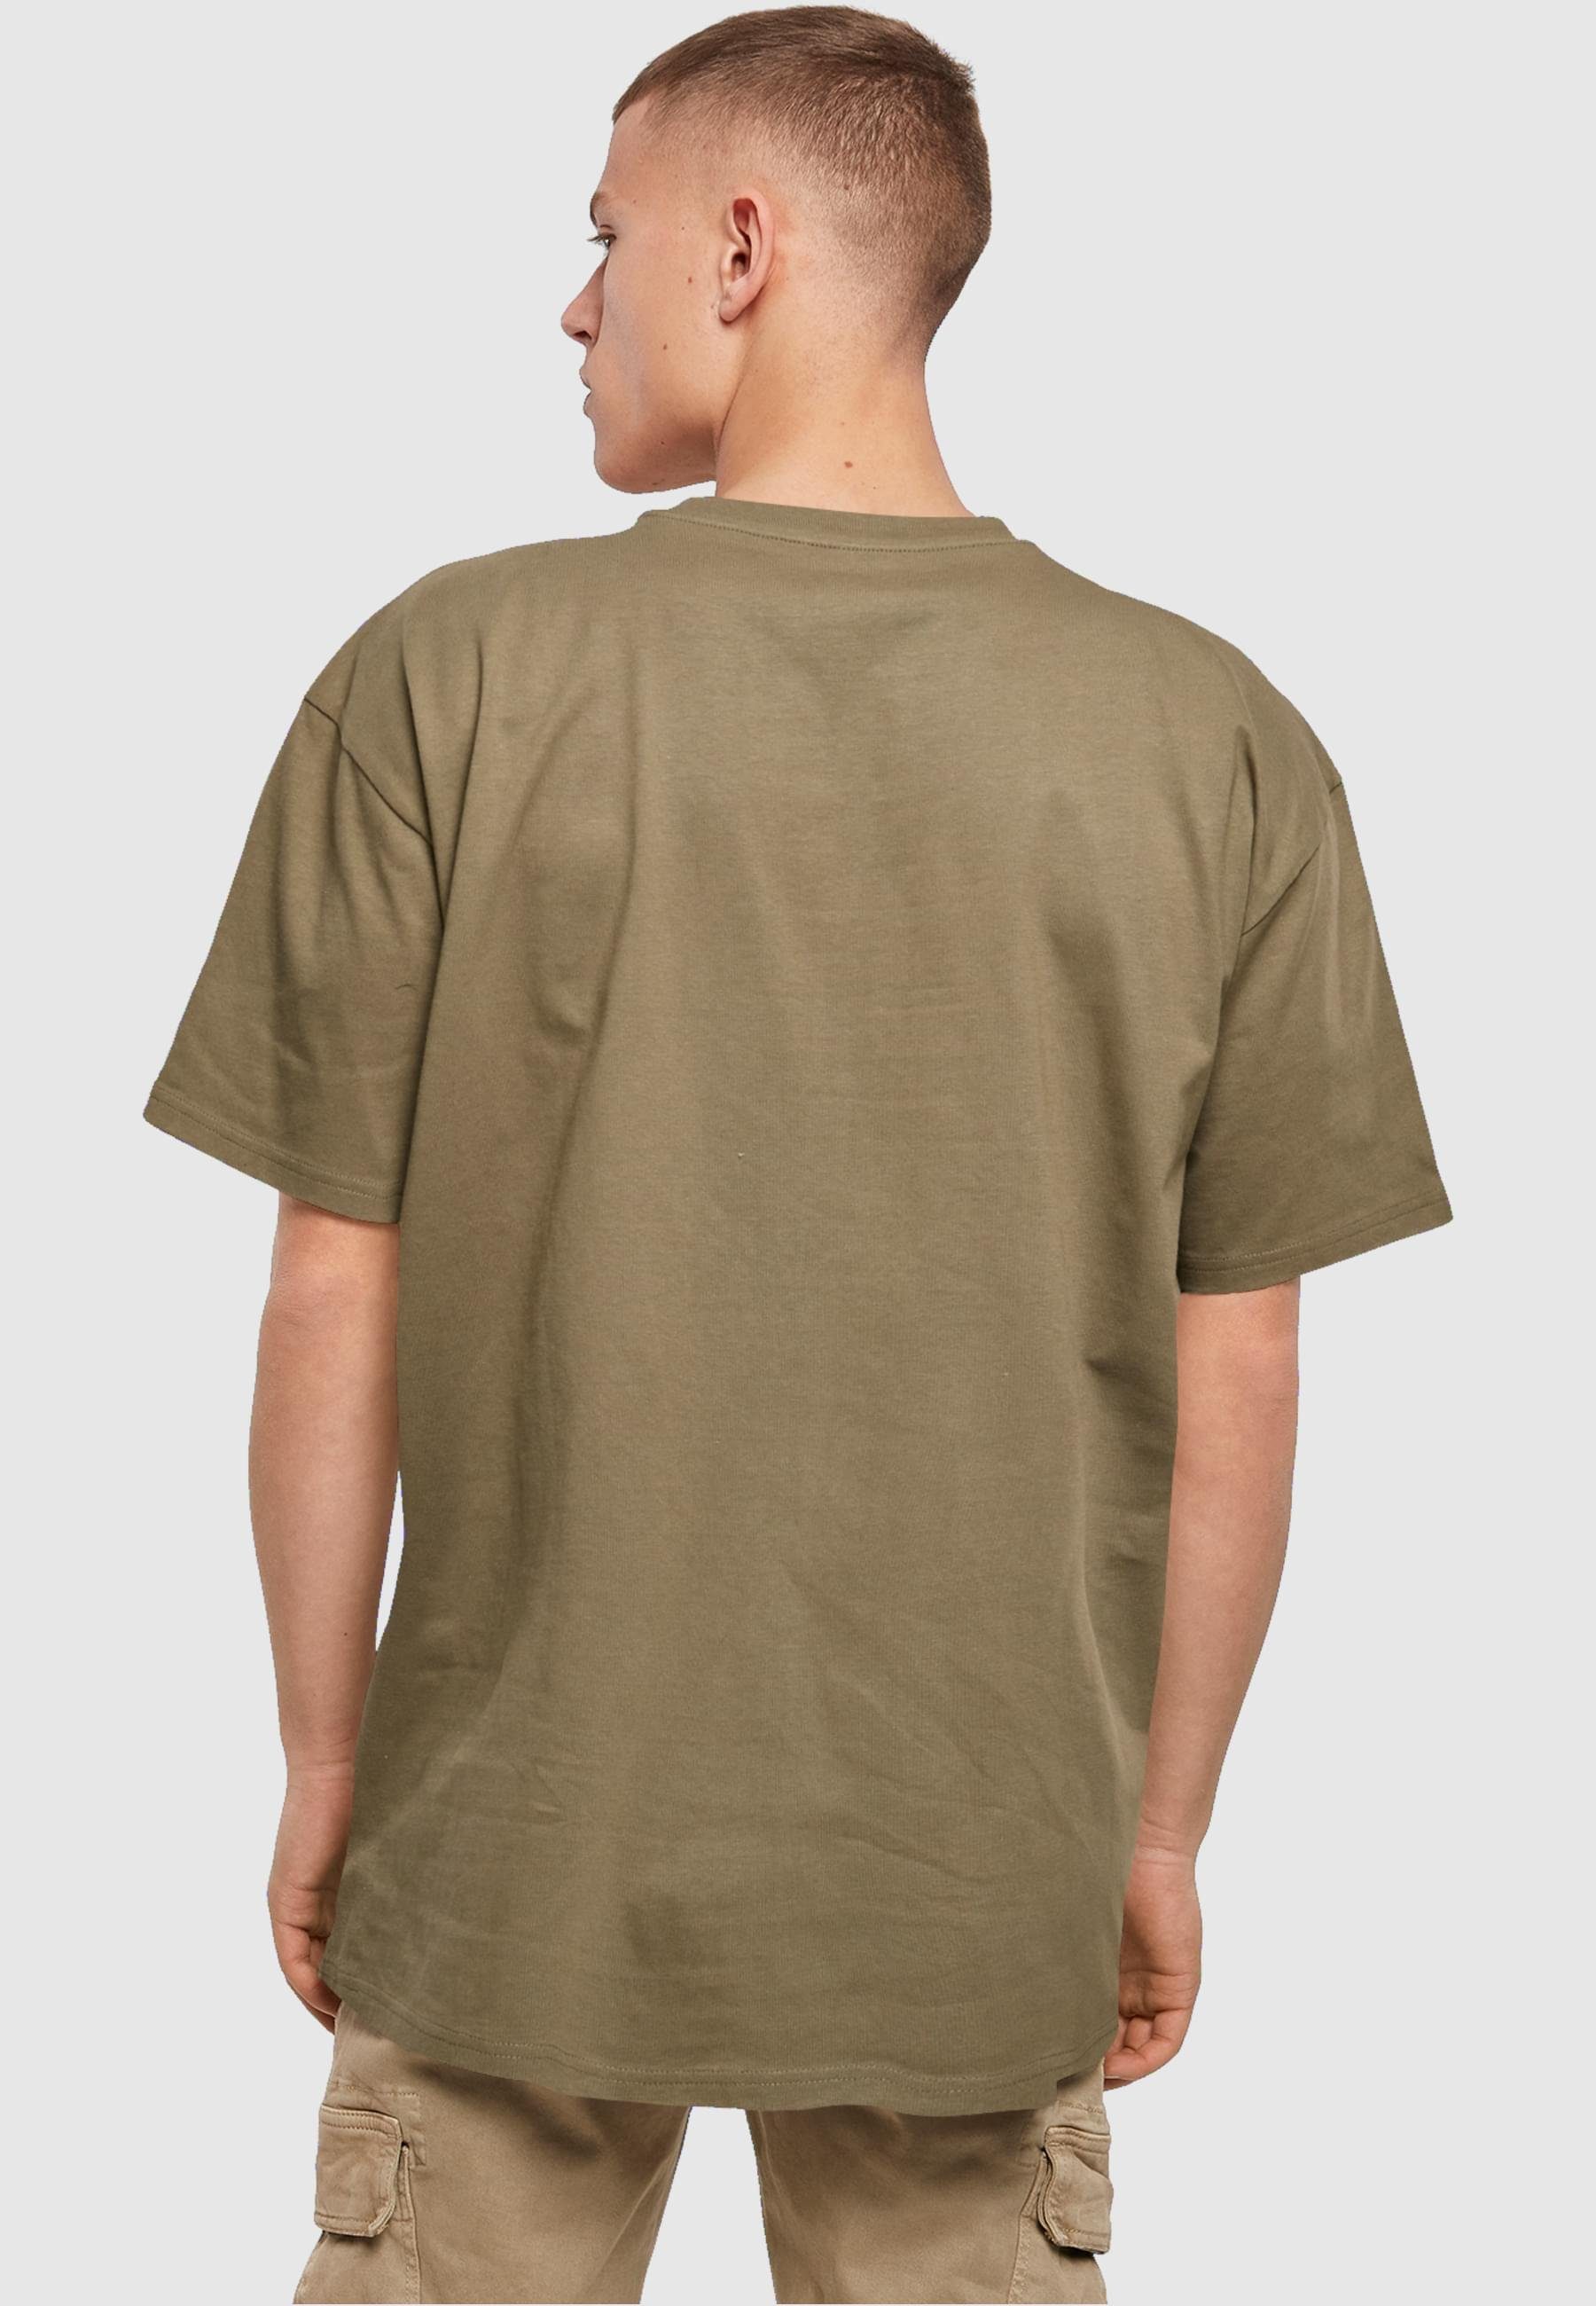 Merchcode T-Shirt Herren Layla Dance Tee X Oversize (1-tlg) olive